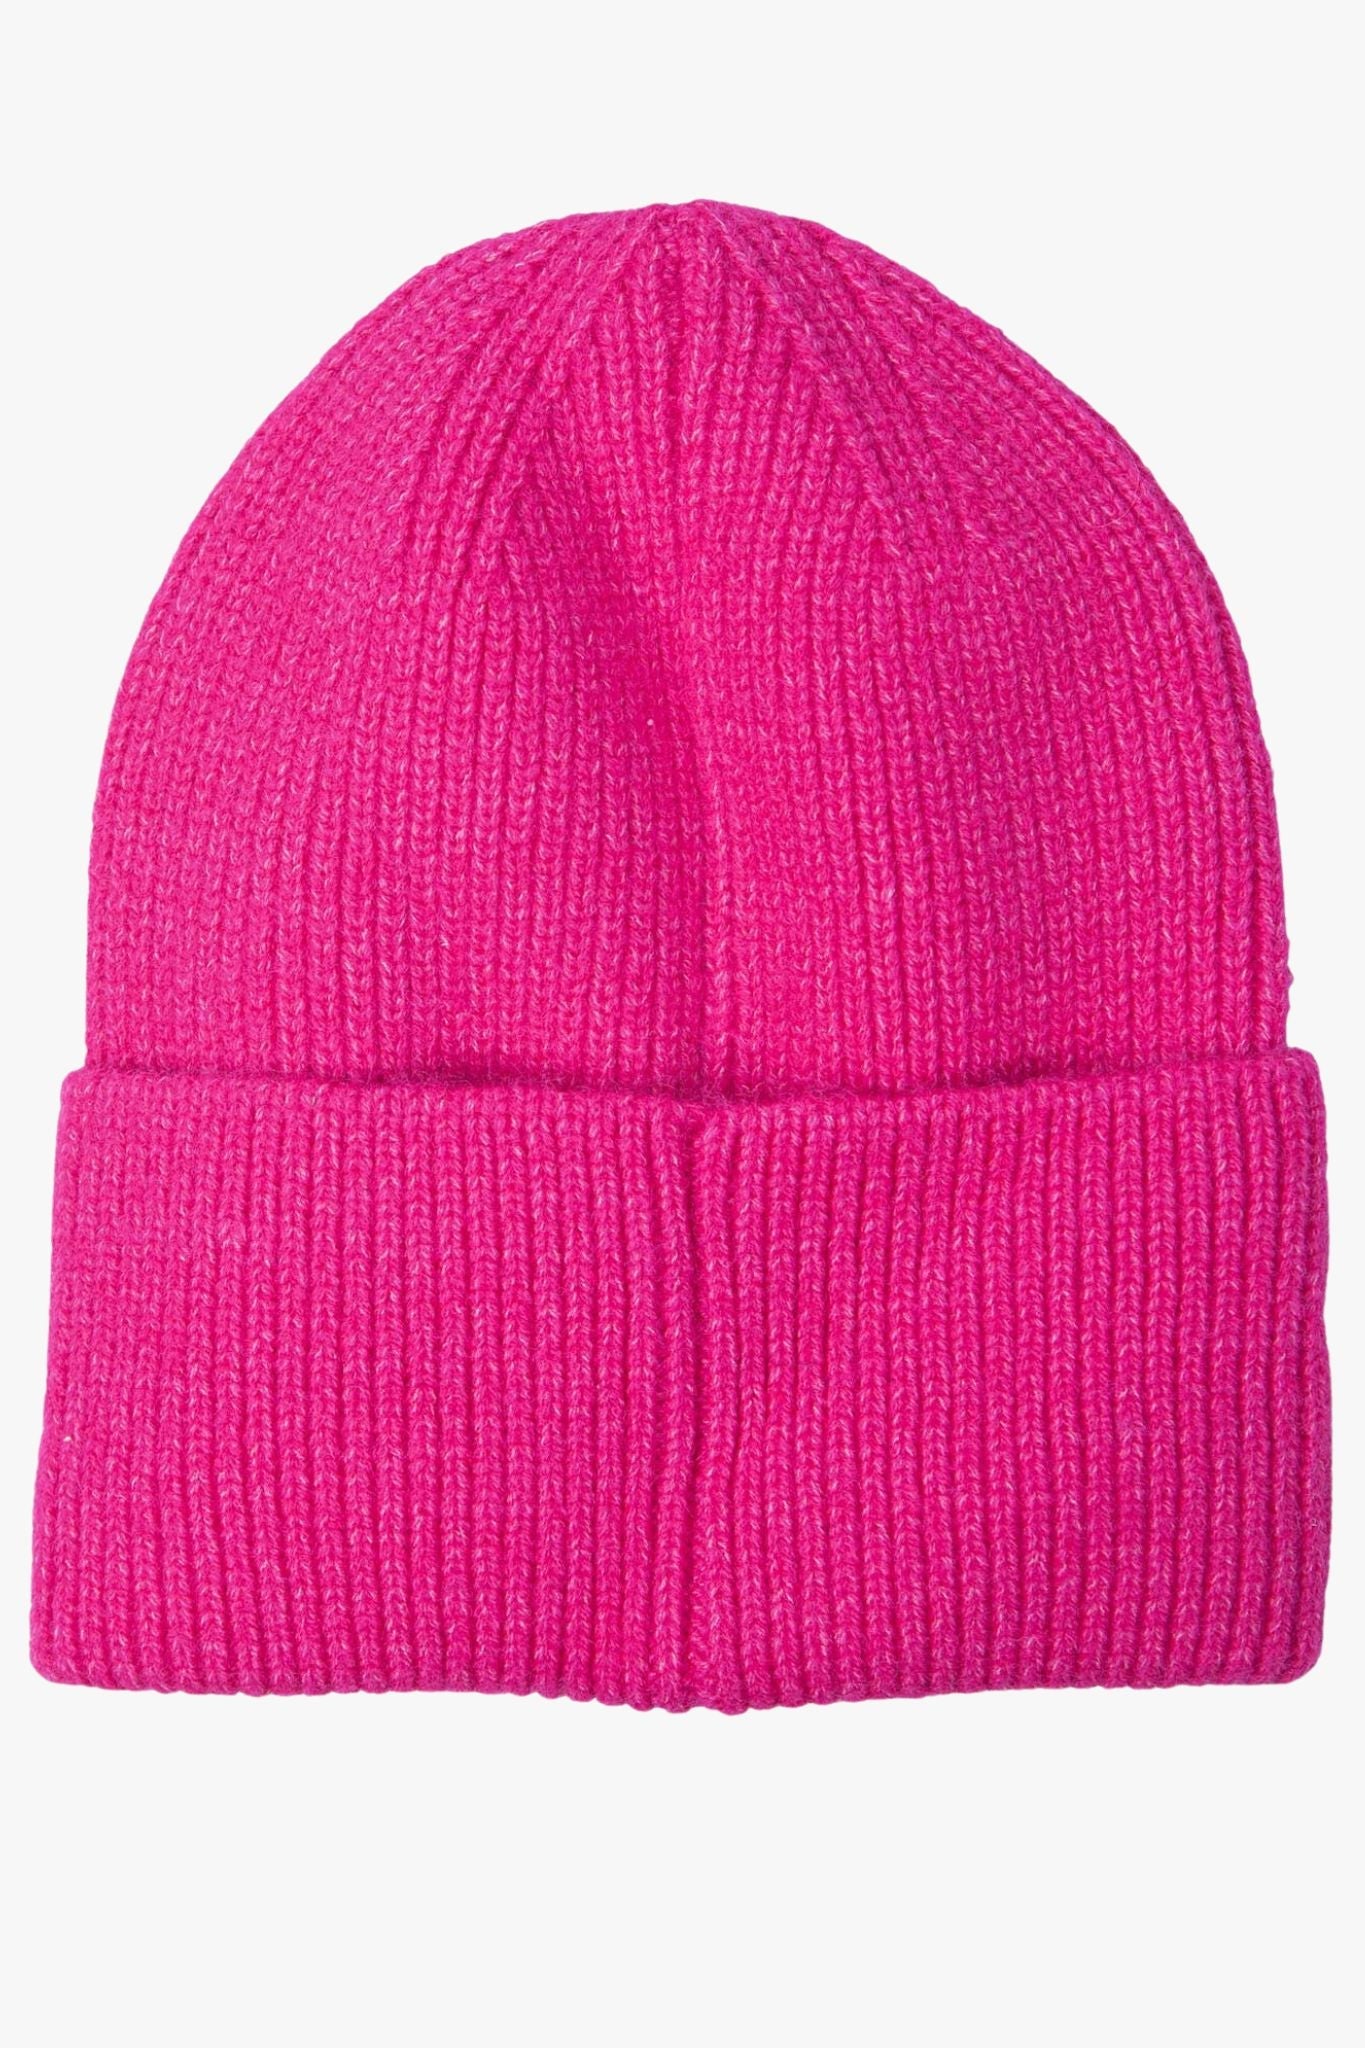 a plain fuchsia pink beanie hat